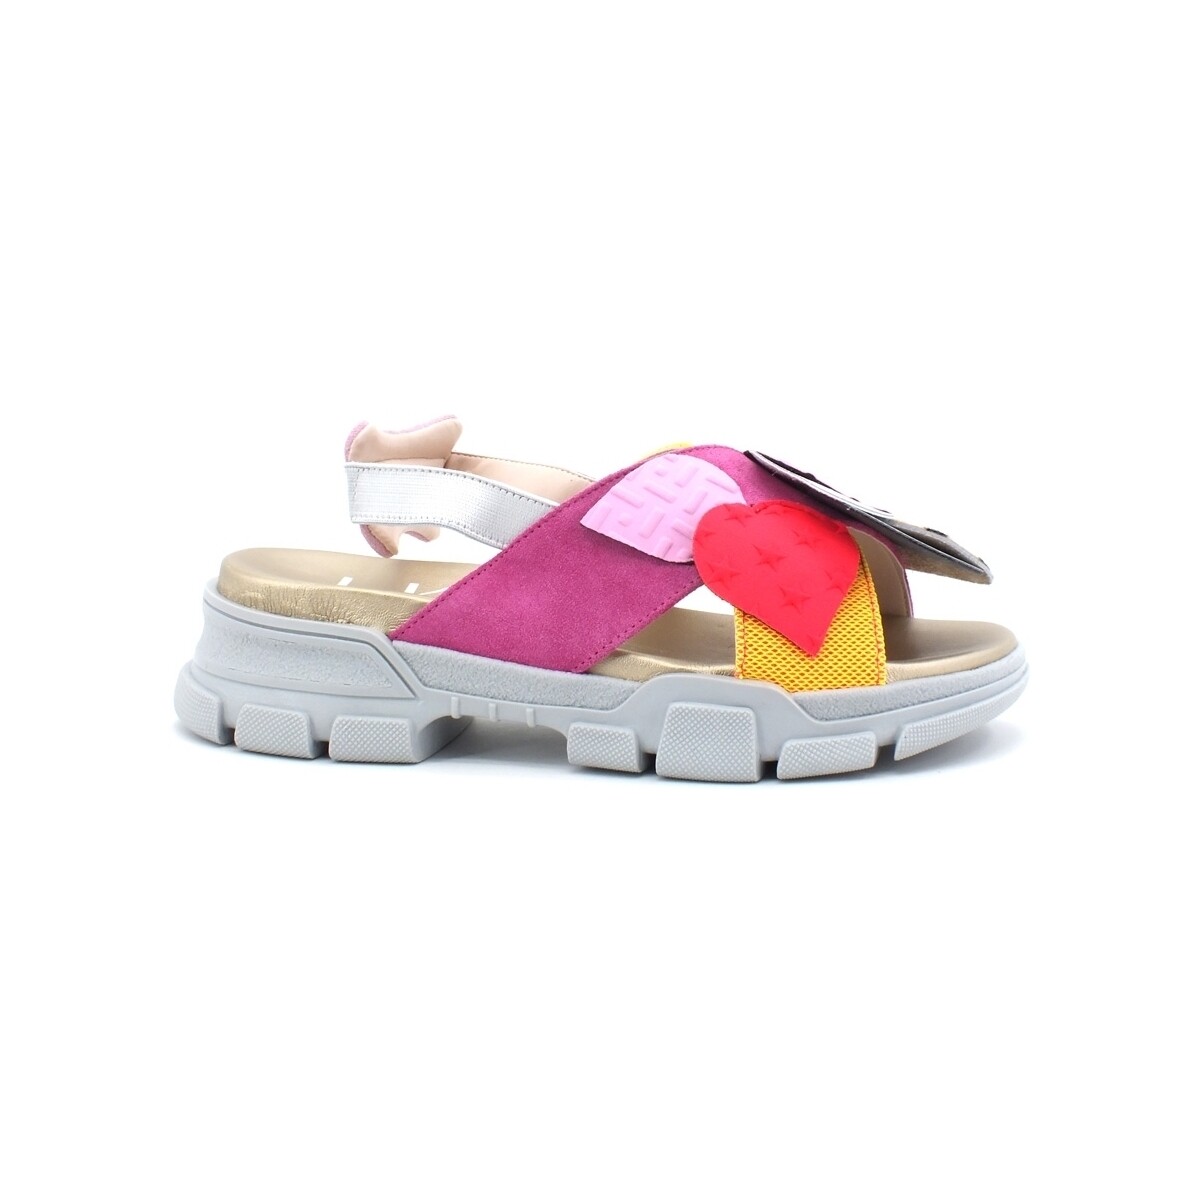 Chaussures Femme Bottes L4k3 Sandal Patch Fuxia B46-SAN Multicolore